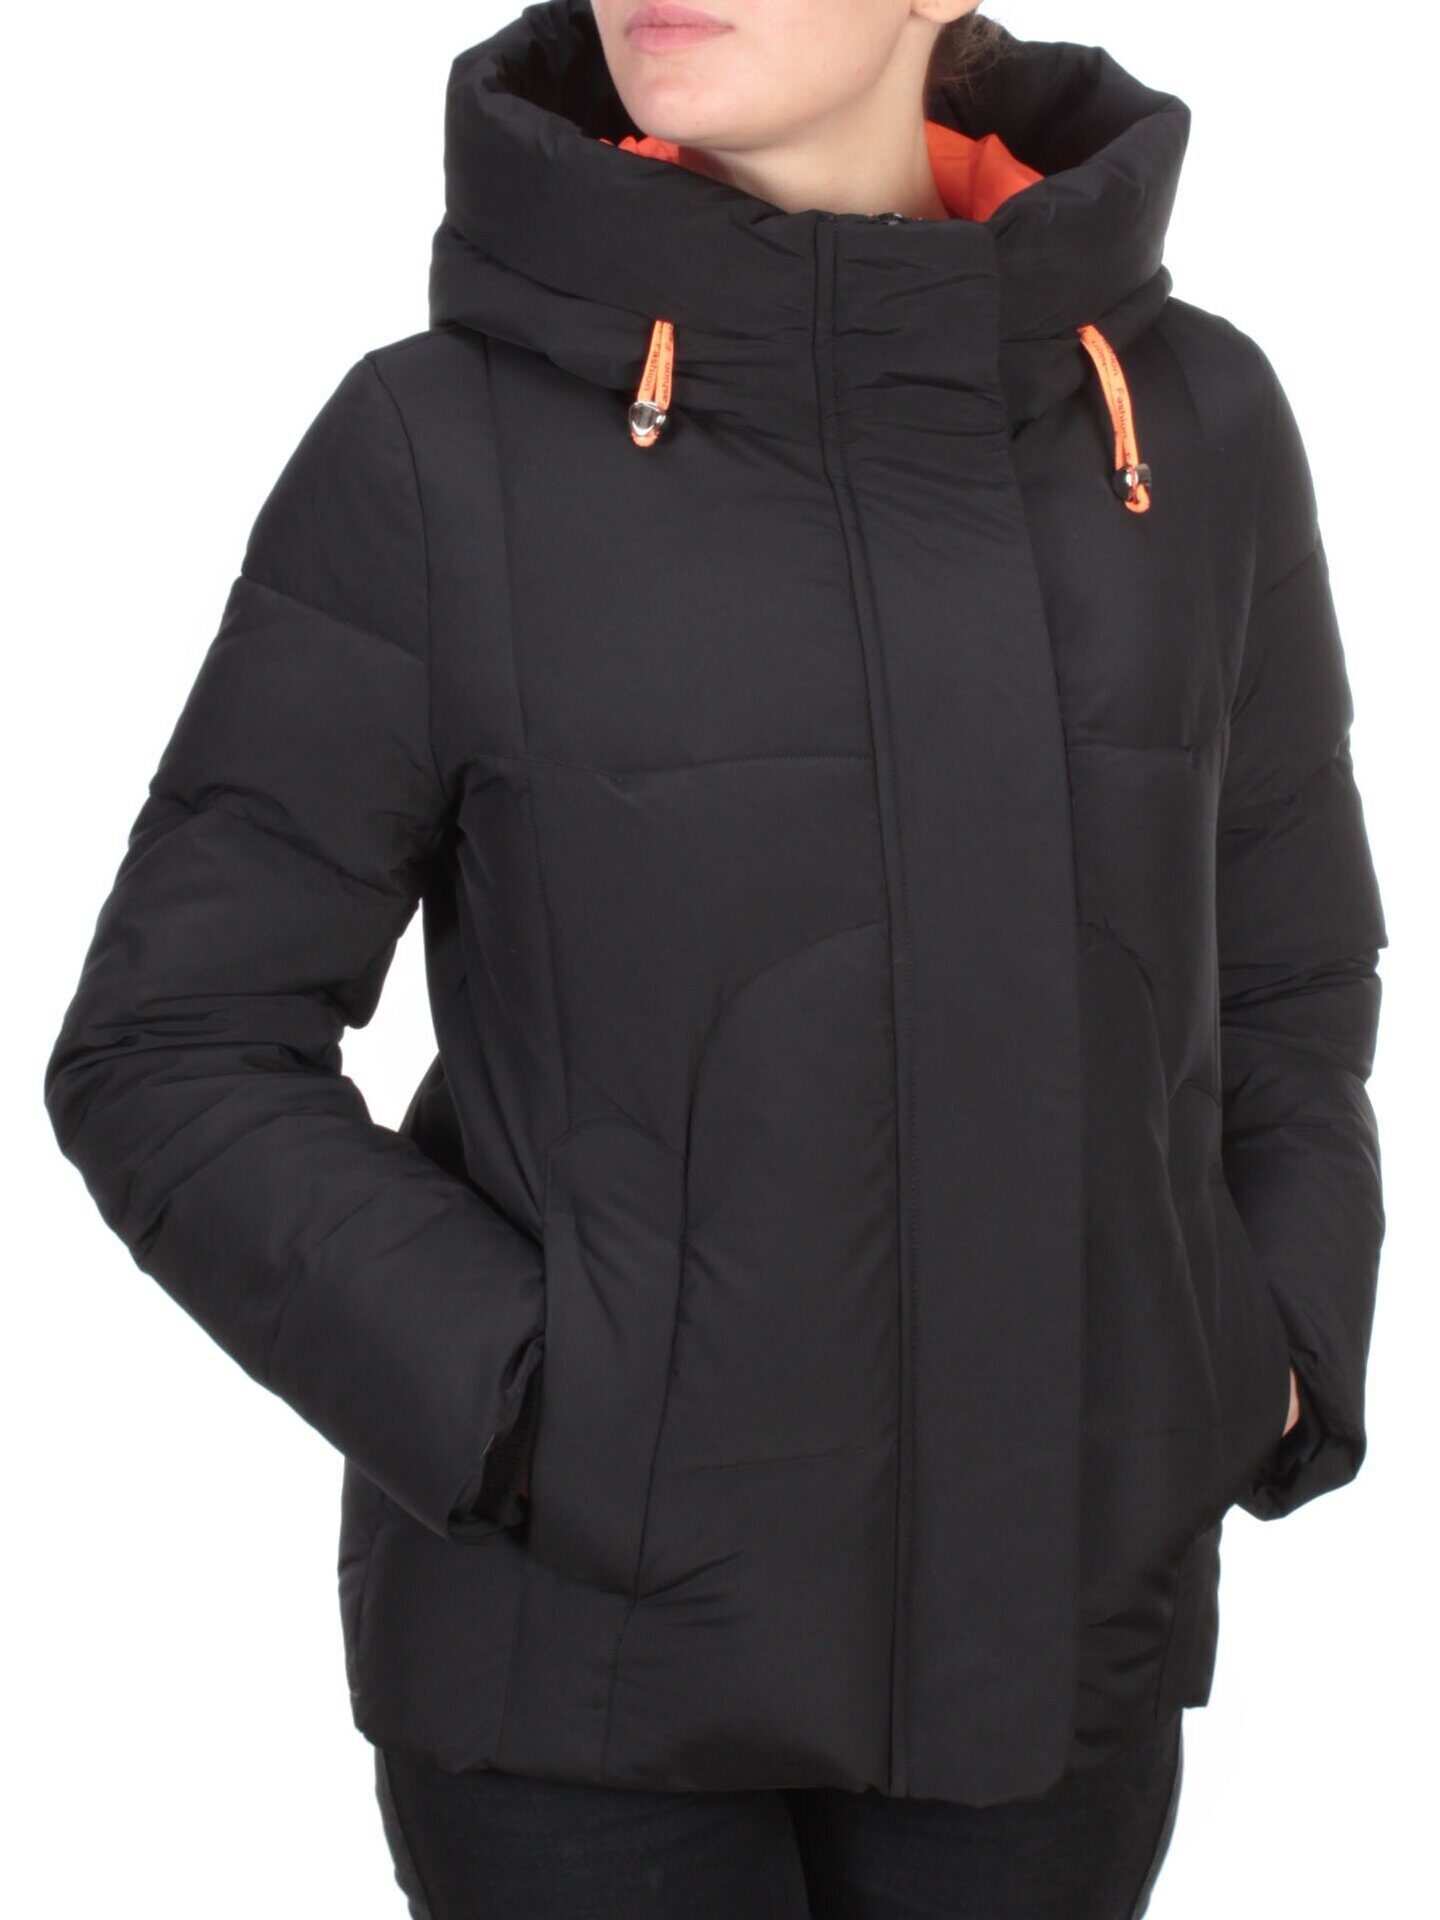 2101 BLACK Черная куртка зимняя женская MONGEDI размер L - 46 российский